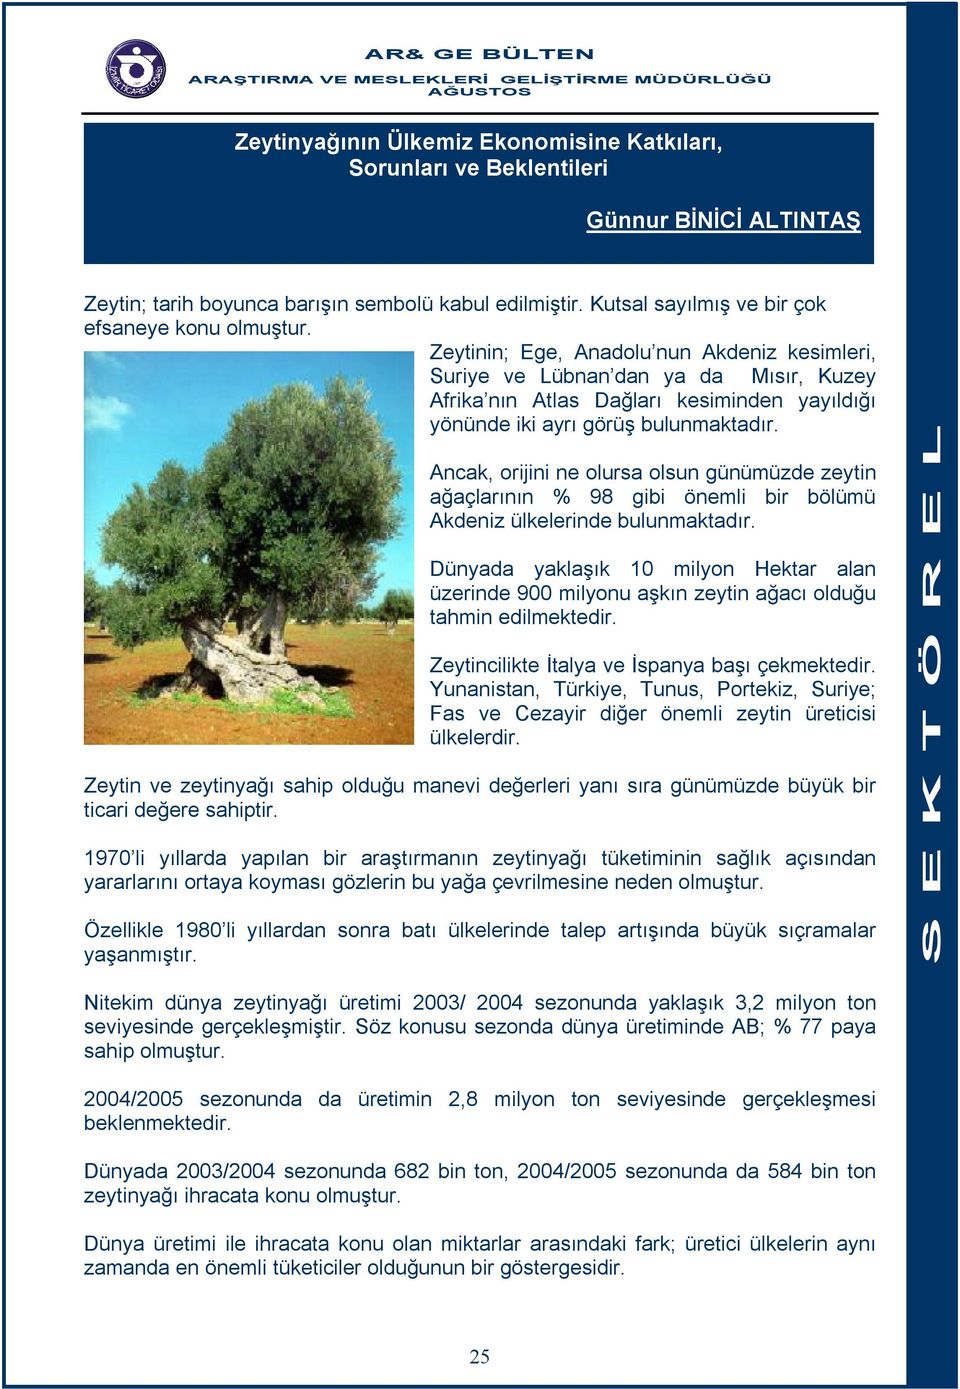 Ancak, orijini ne olursa olsun günümüzde zeytin ağaçlarının % 98 gibi önemli bir bölümü Akdeniz ülkelerinde bulunmaktadır.